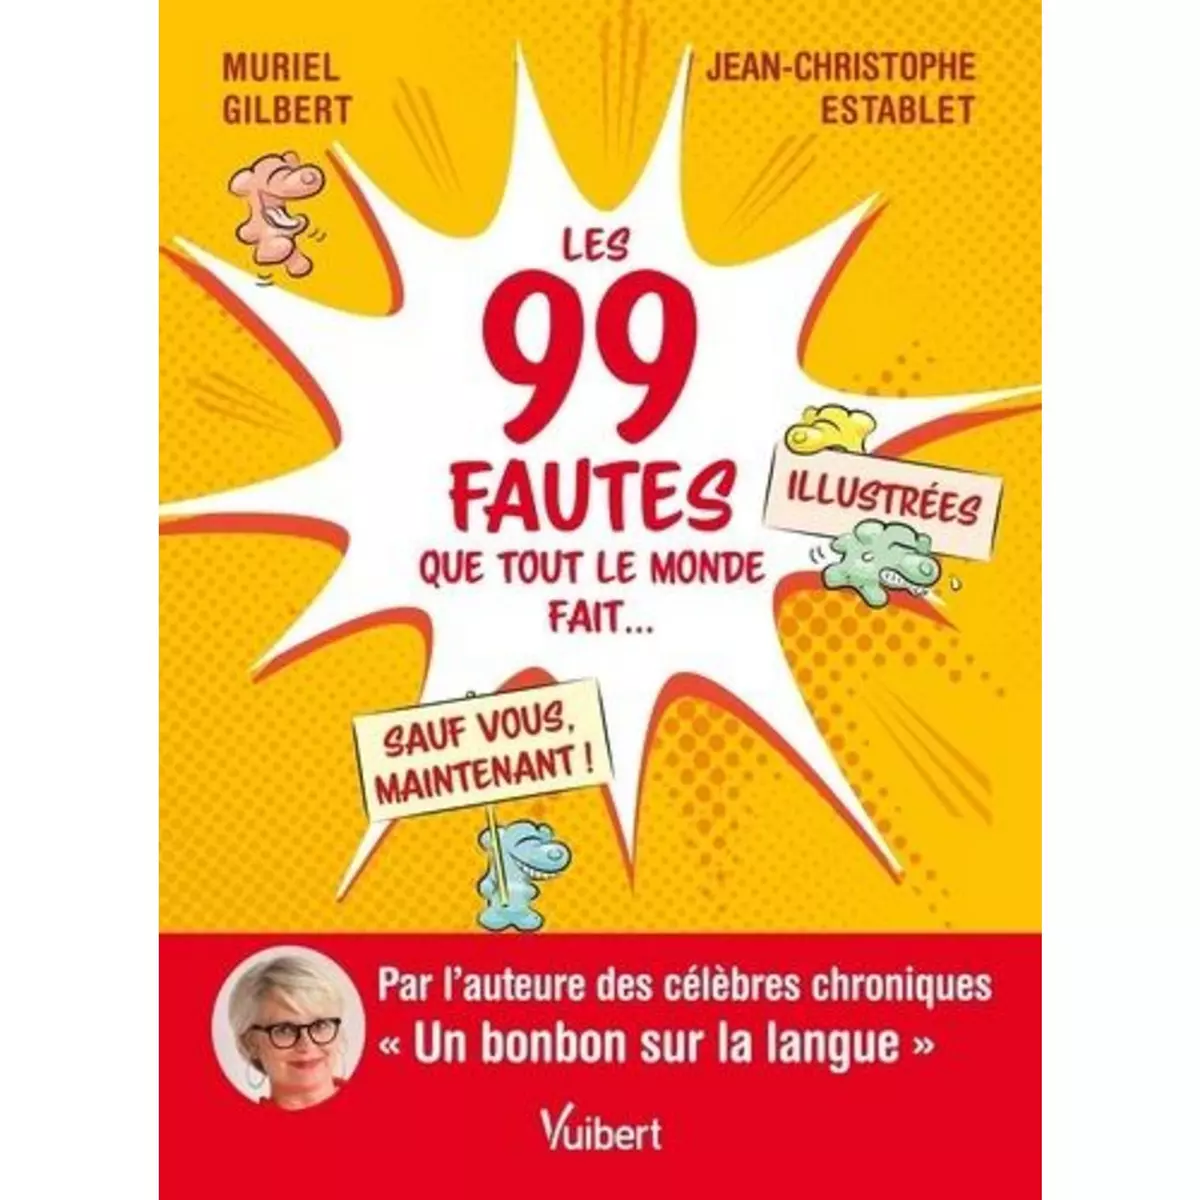  LES 99 FAUTES QUE TOUT LE MONDE FAIT... SAUF VOUS, MAINTENANT !, Gilbert Muriel